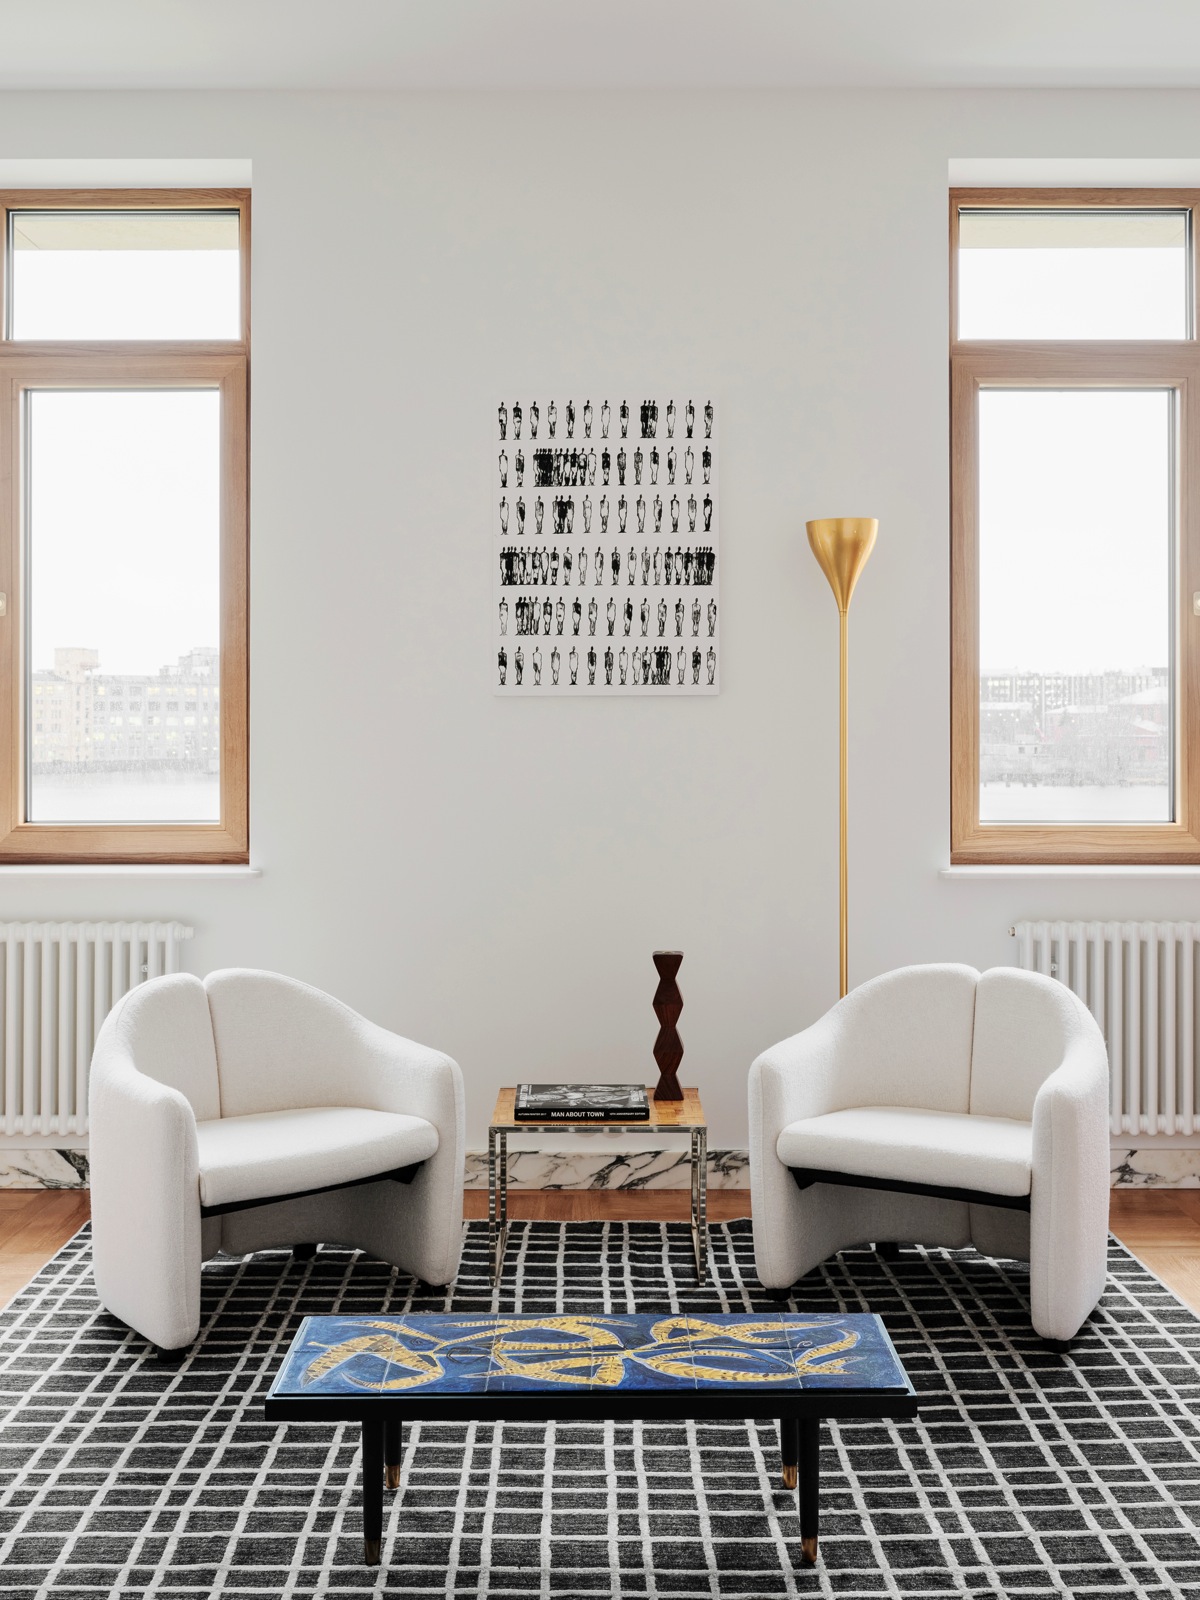 Toàn bộ bức tường trong căn hộ được sơn trắng cho vẻ đẹp tươi sáng, kết hợp dễ dàng với nội thất xung quanh. Thay vì sử dụng sofa cỡ lớn, NTK đã chọn 2 chiếc ghế bành nhỏ, 1 bàn nước hình chữ nhật với mặt bàn màu xanh lam và họa tiết lạ mắt. Chính giữa là bàn phụ nhỏ nhắn, trên tường là bức tranh của họa sĩ Alina Utrobina.